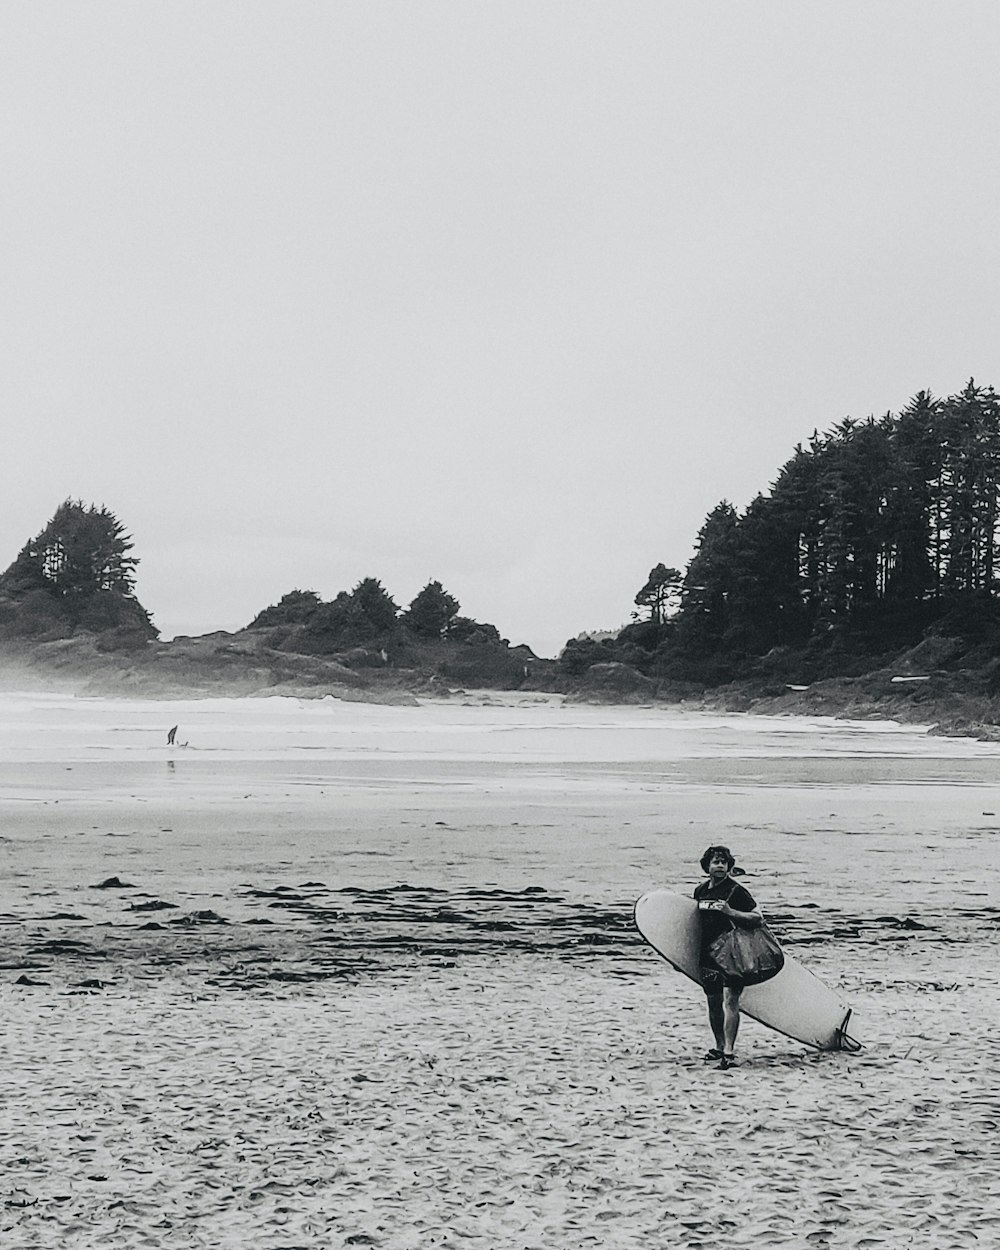 persona in camicia nera che trasporta tavola da surf bianca che cammina sulla spiaggia durante il giorno